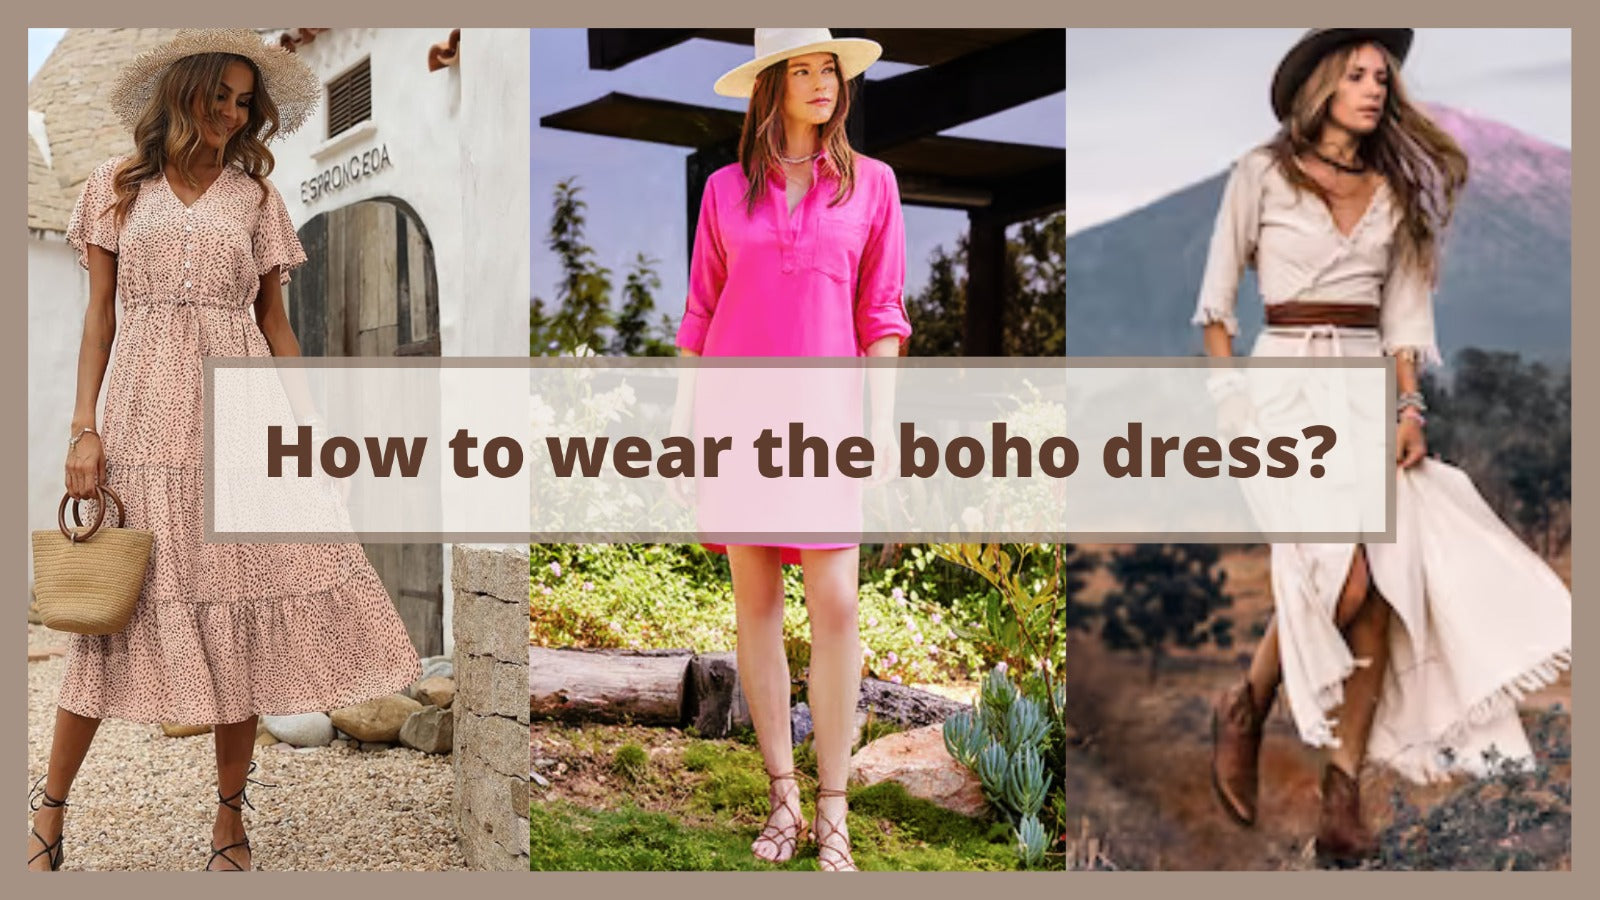 How to wear the boho dress?